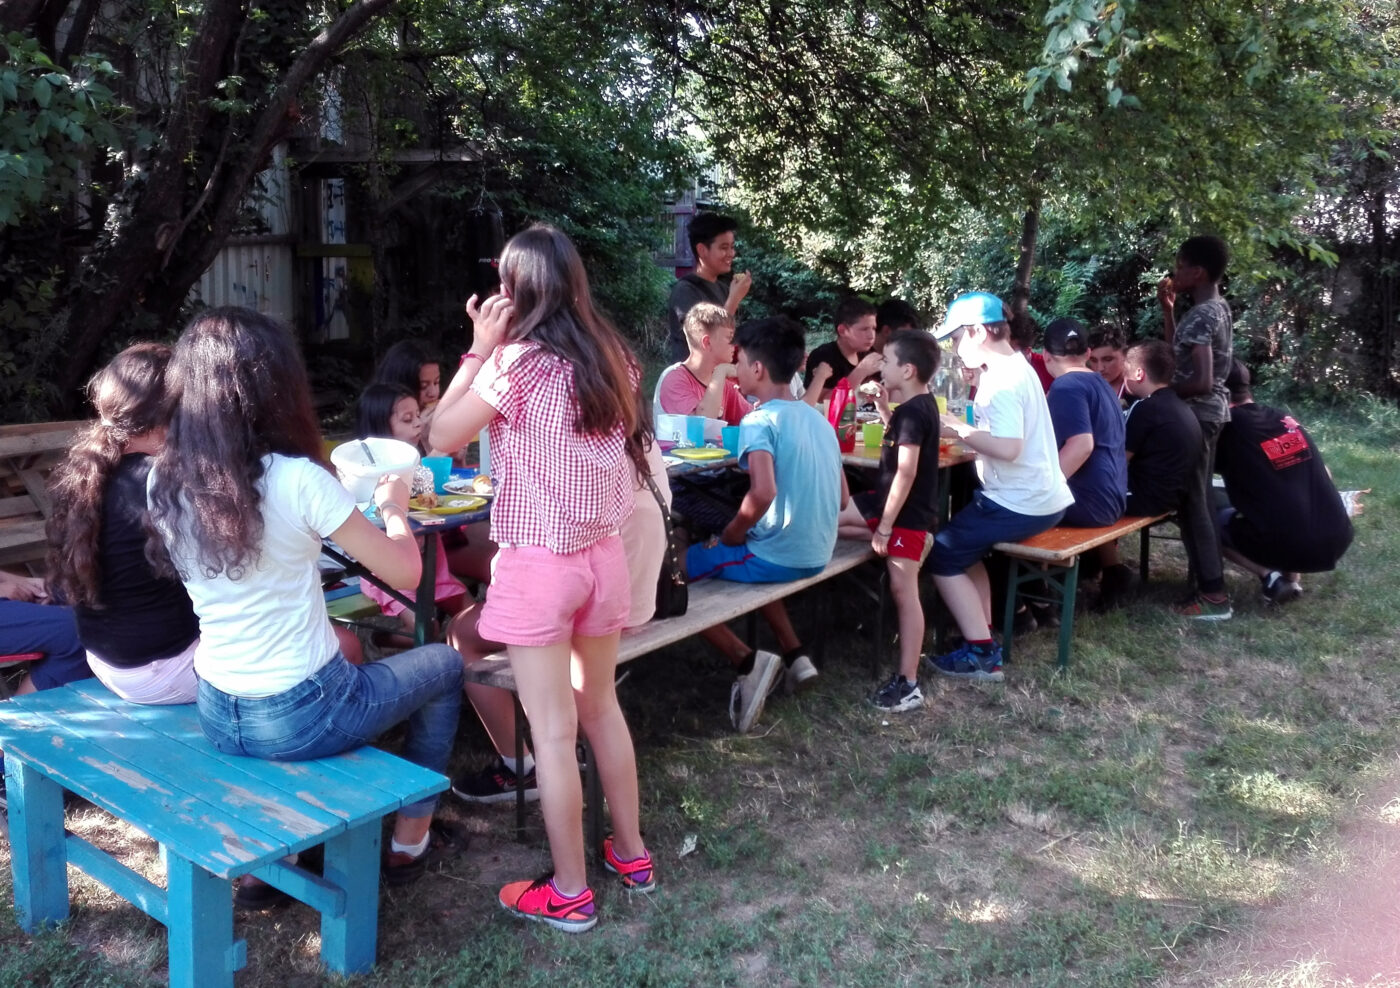 Ca 15 Kinder sitzen auf Holzbänken rund um mehrere Tische und essen und trinken und unterhalten sich.